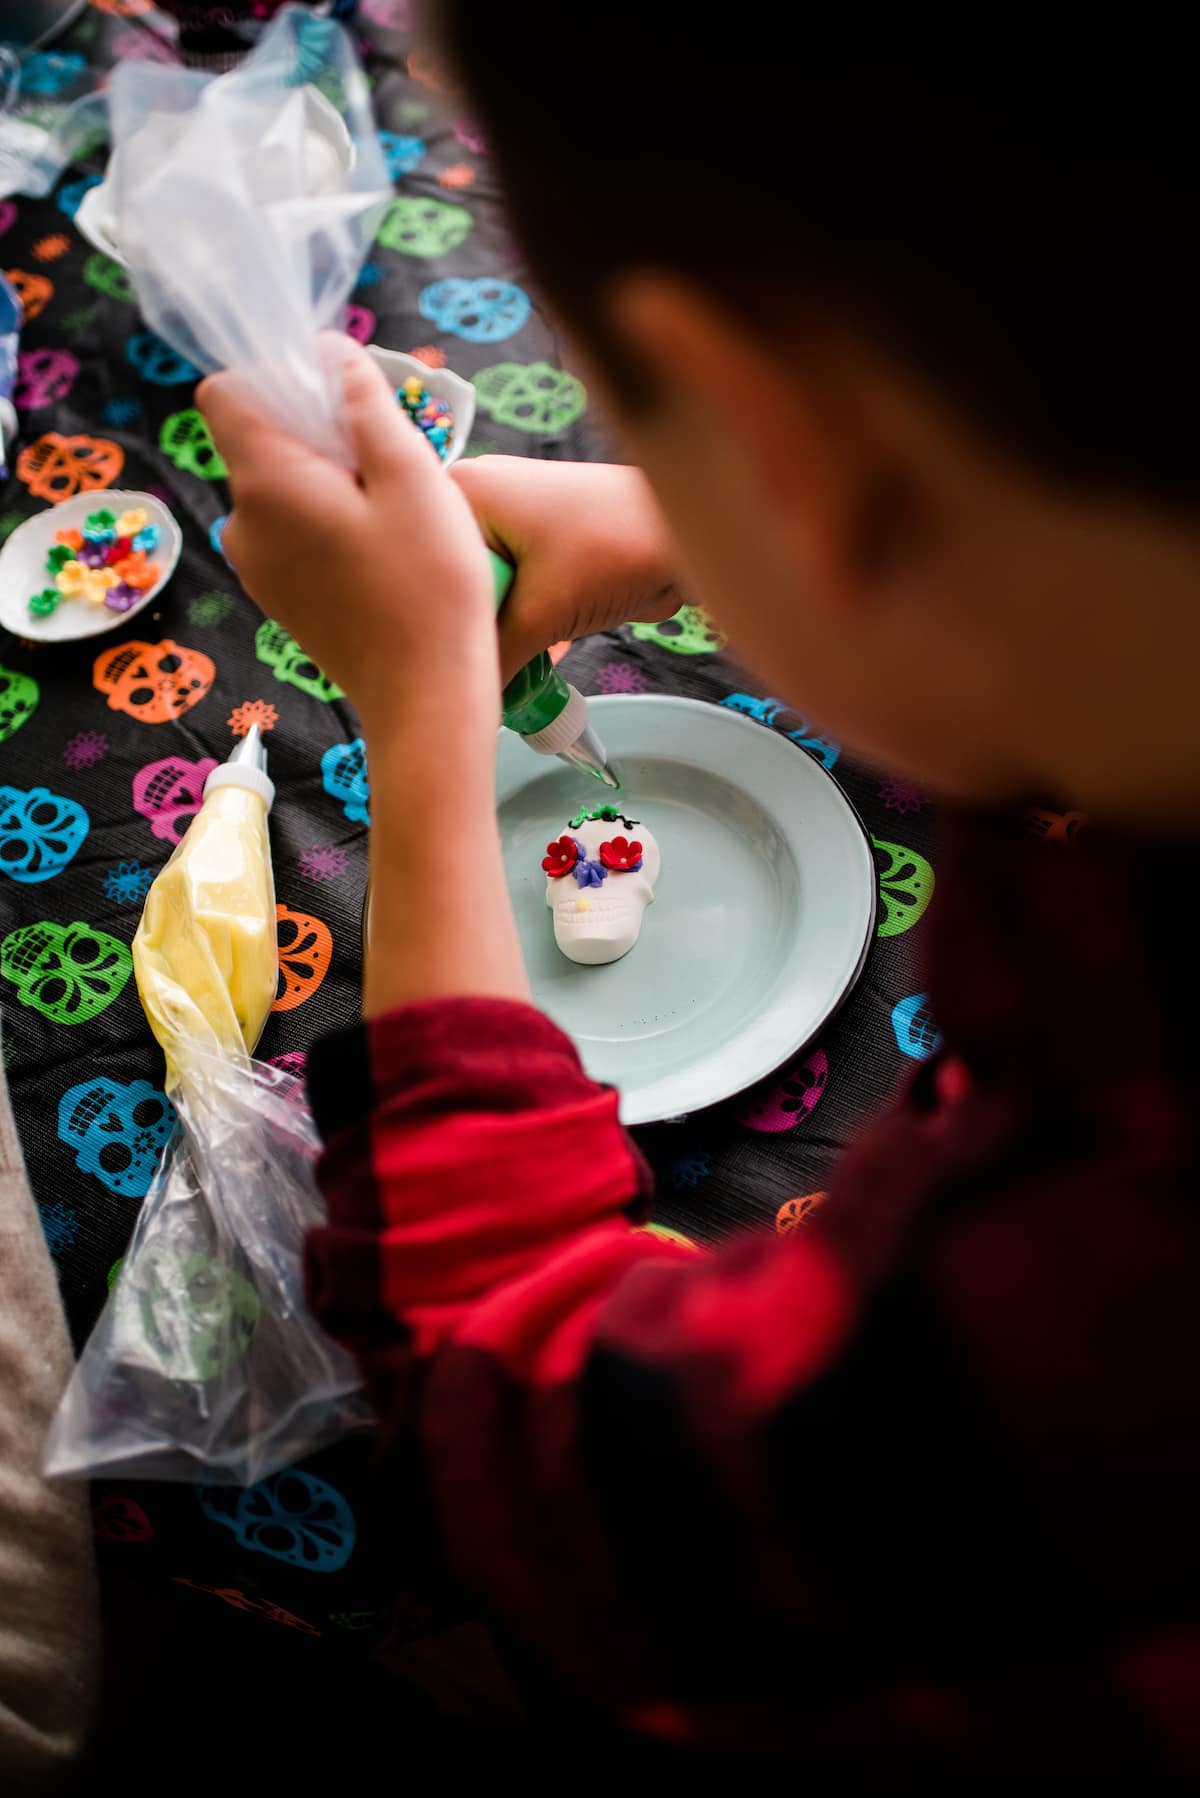 Uma foto aérea de um menino decorando seus crânios de doces Dia de los Muertos com cobertura colorida, flores de doces e salpicos em cima de uma toalha de mesa colorida no crânio.